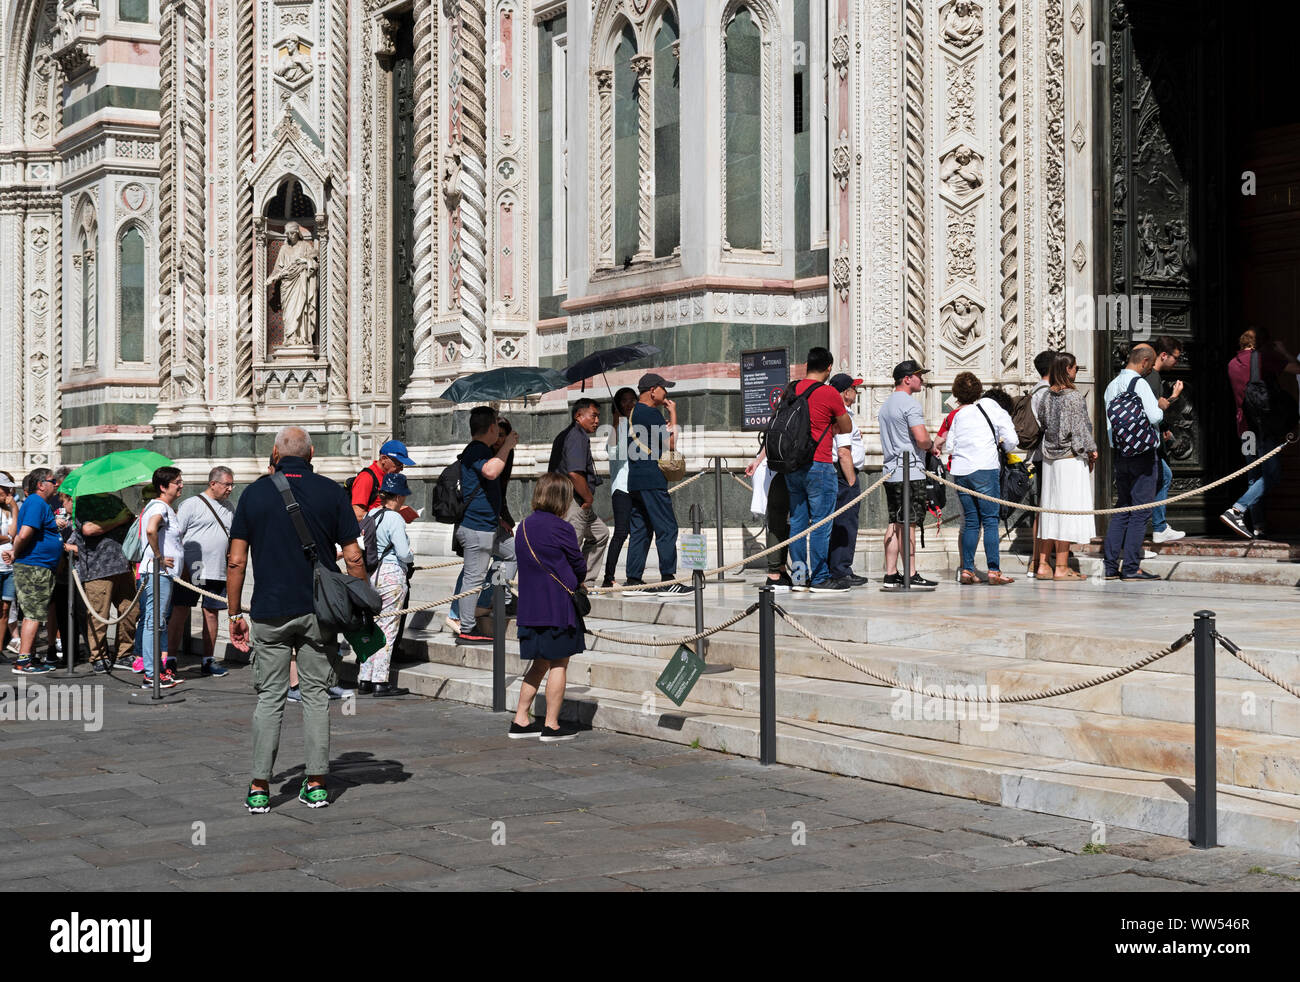 Visiteurs Touristes en attente à l'entrée de Santa Maria del Fiore, la cathédrale de florence, toscane, italie. Banque D'Images